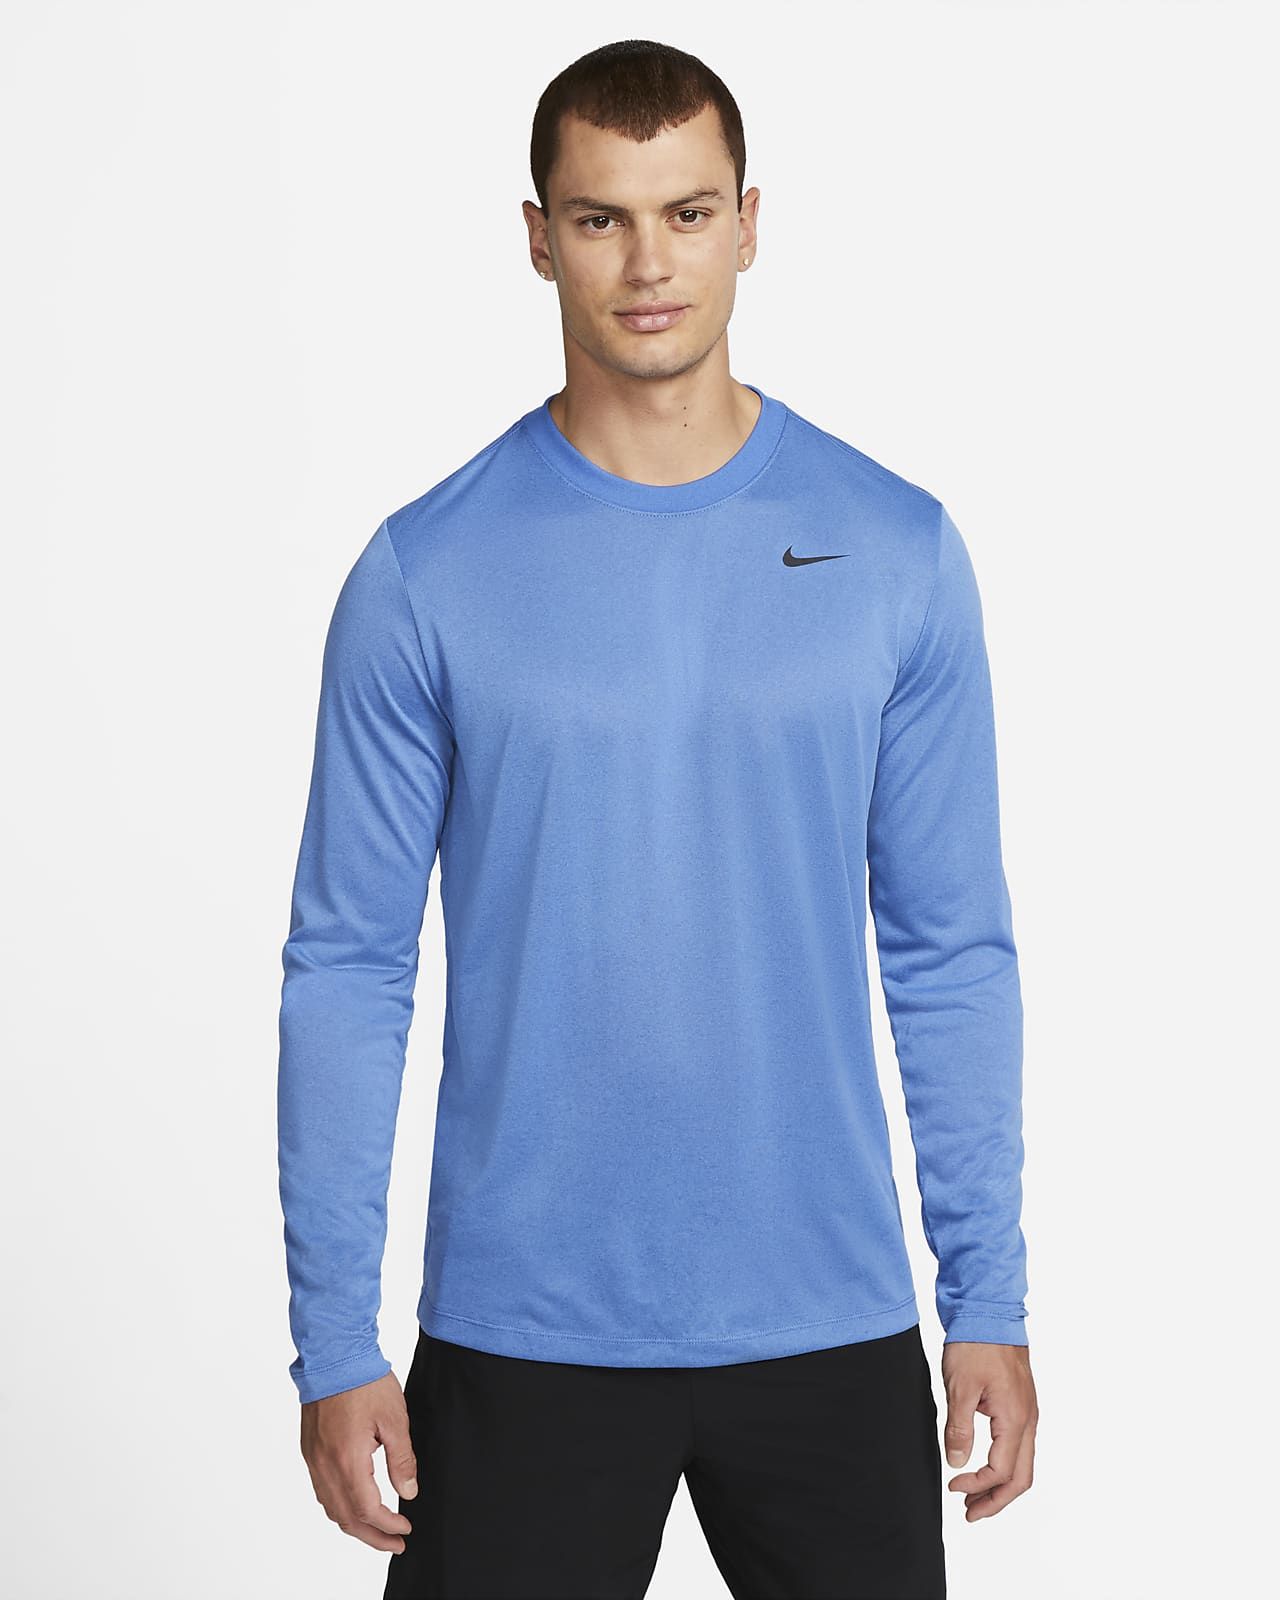 Nike Dri-FIT Legend Men's Long-Sleeve Fitness Top. Nike.com | Nike (US)